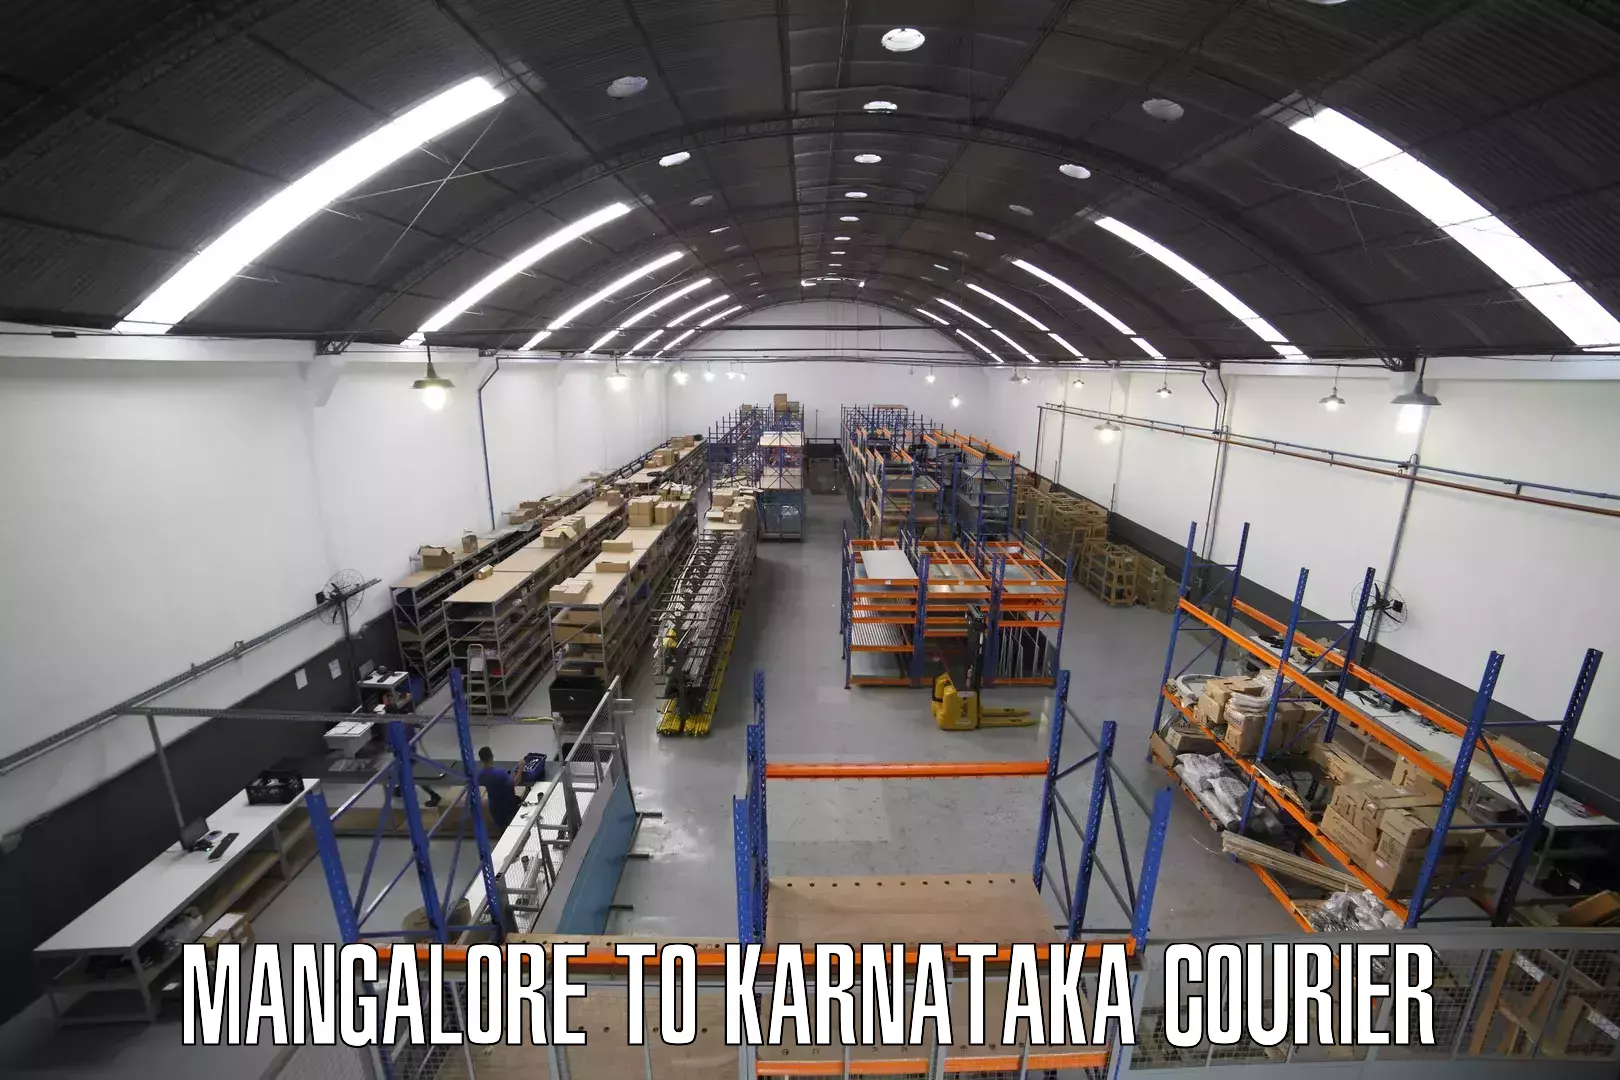 Versatile courier offerings Mangalore to Karnataka